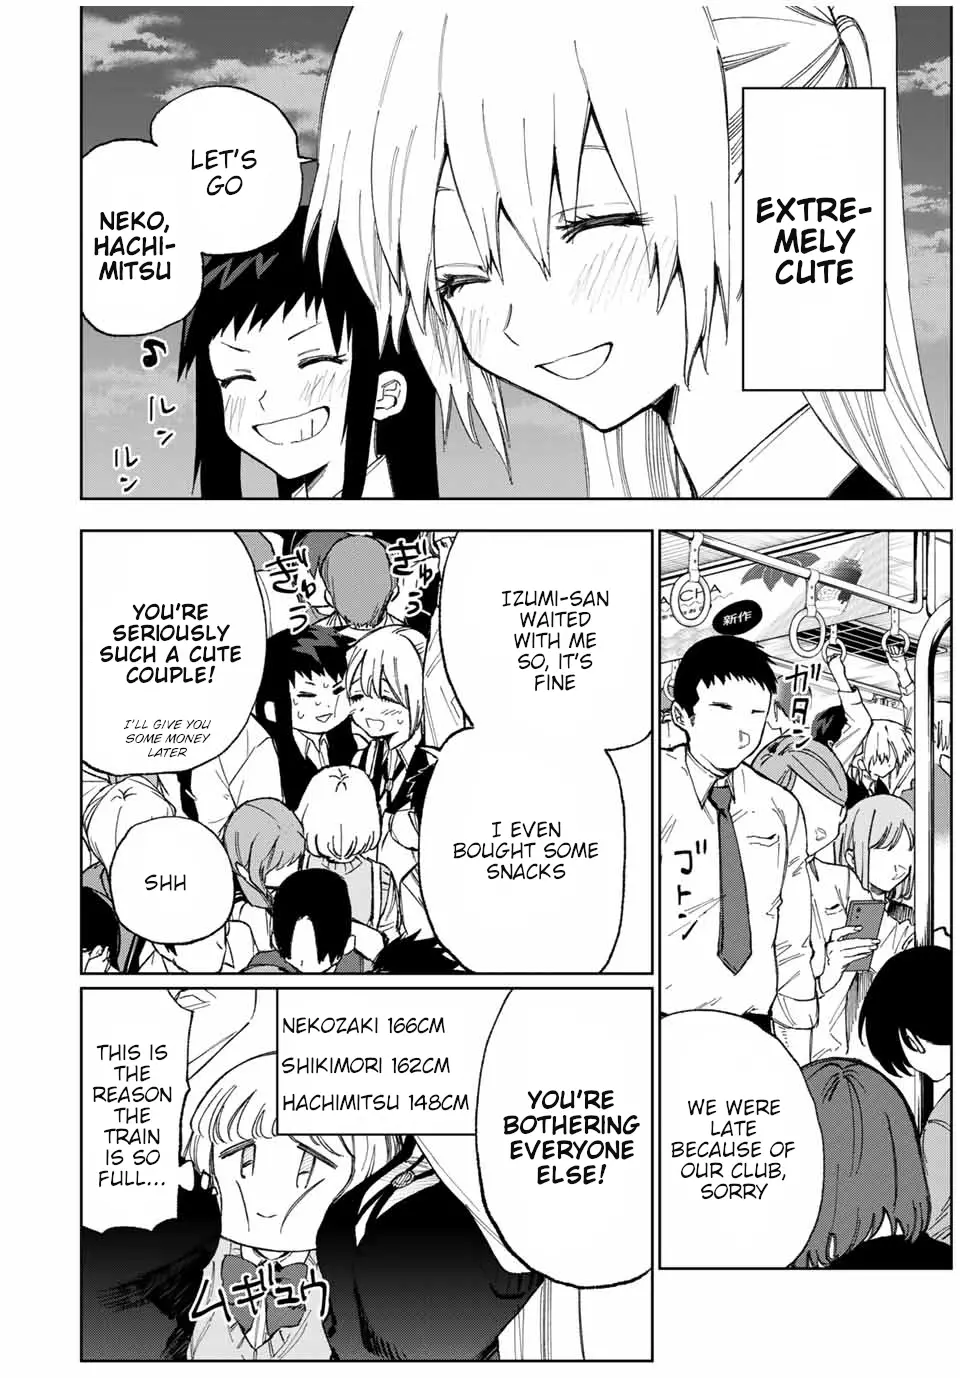 Shikimori's Not Just A Cutie - 24 page 3